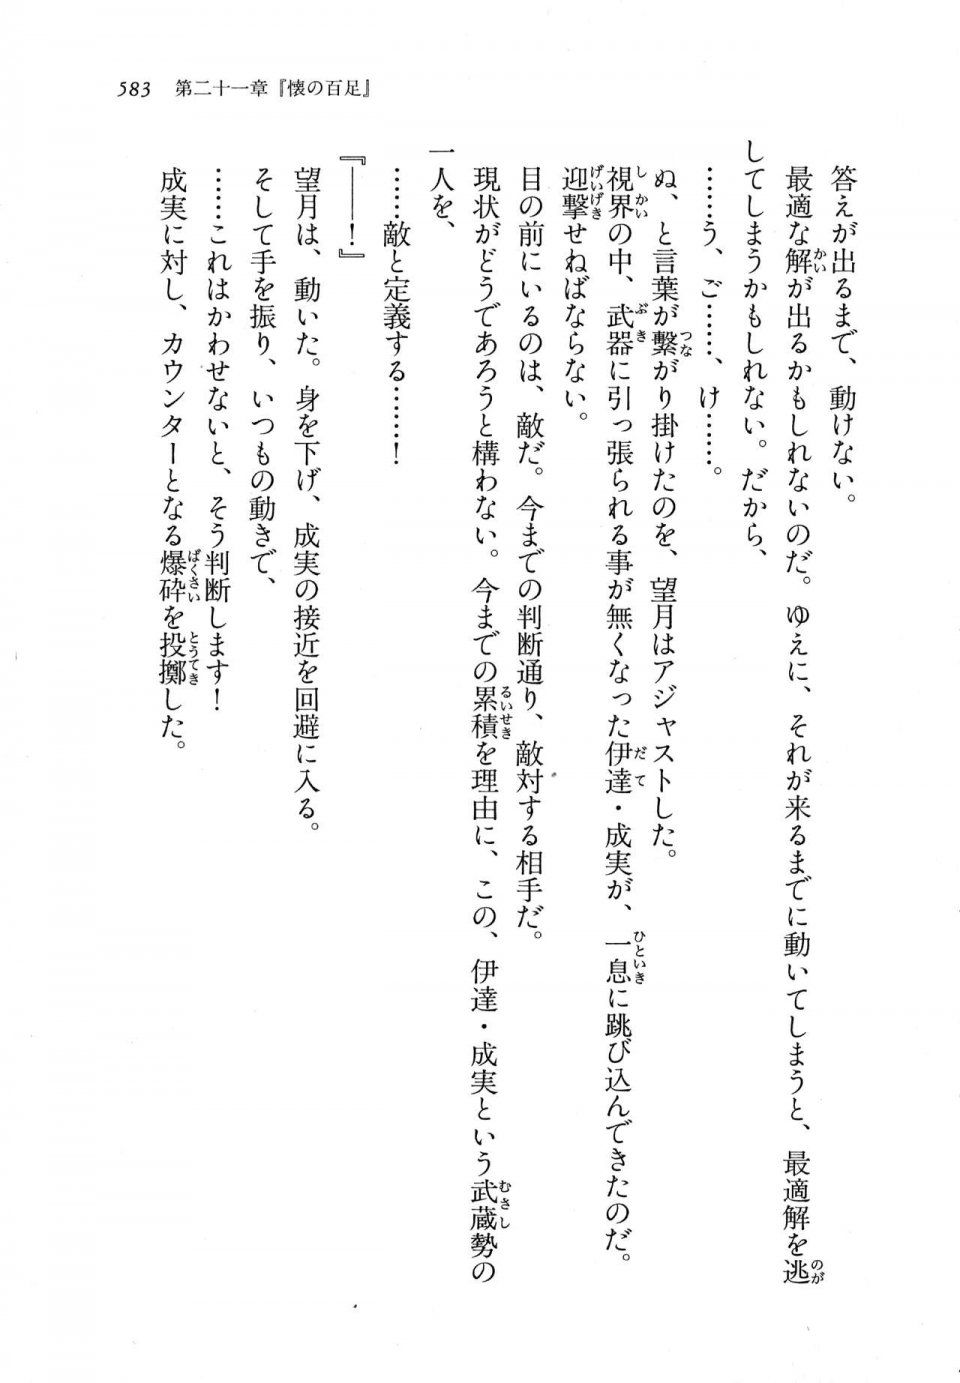 Kyoukai Senjou no Horizon LN Vol 11(5A) - Photo #583